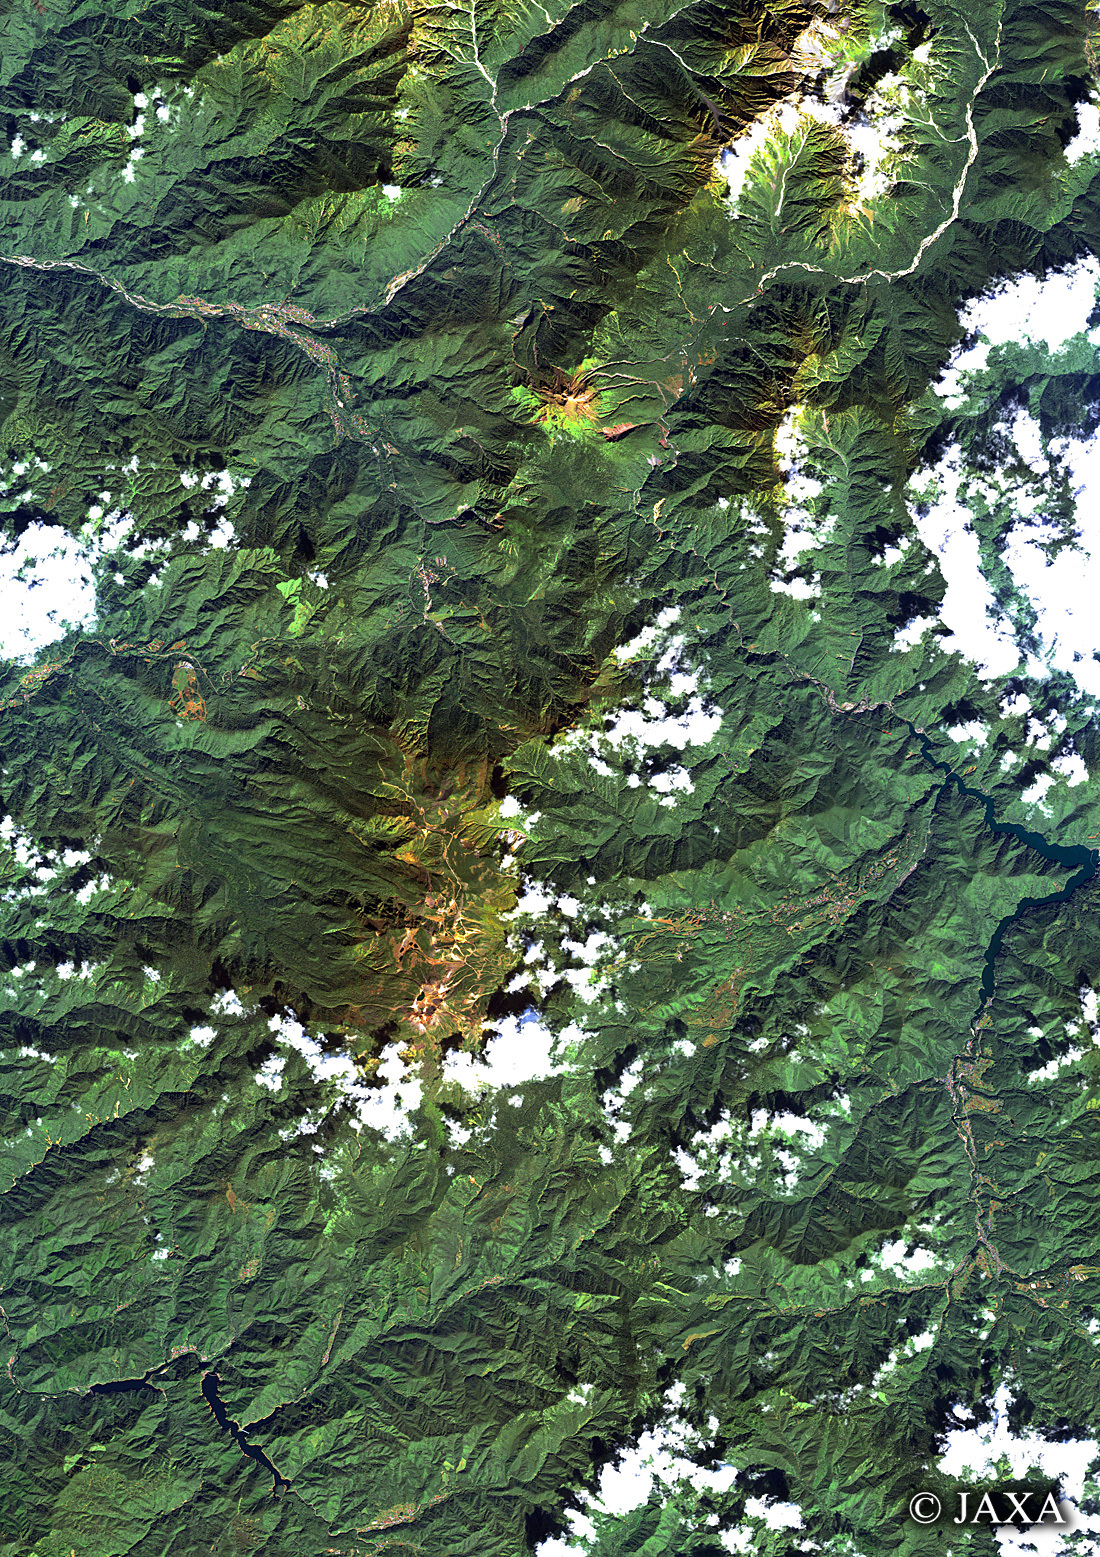 だいちから見た日本の都市 乗鞍岳:衛星画像